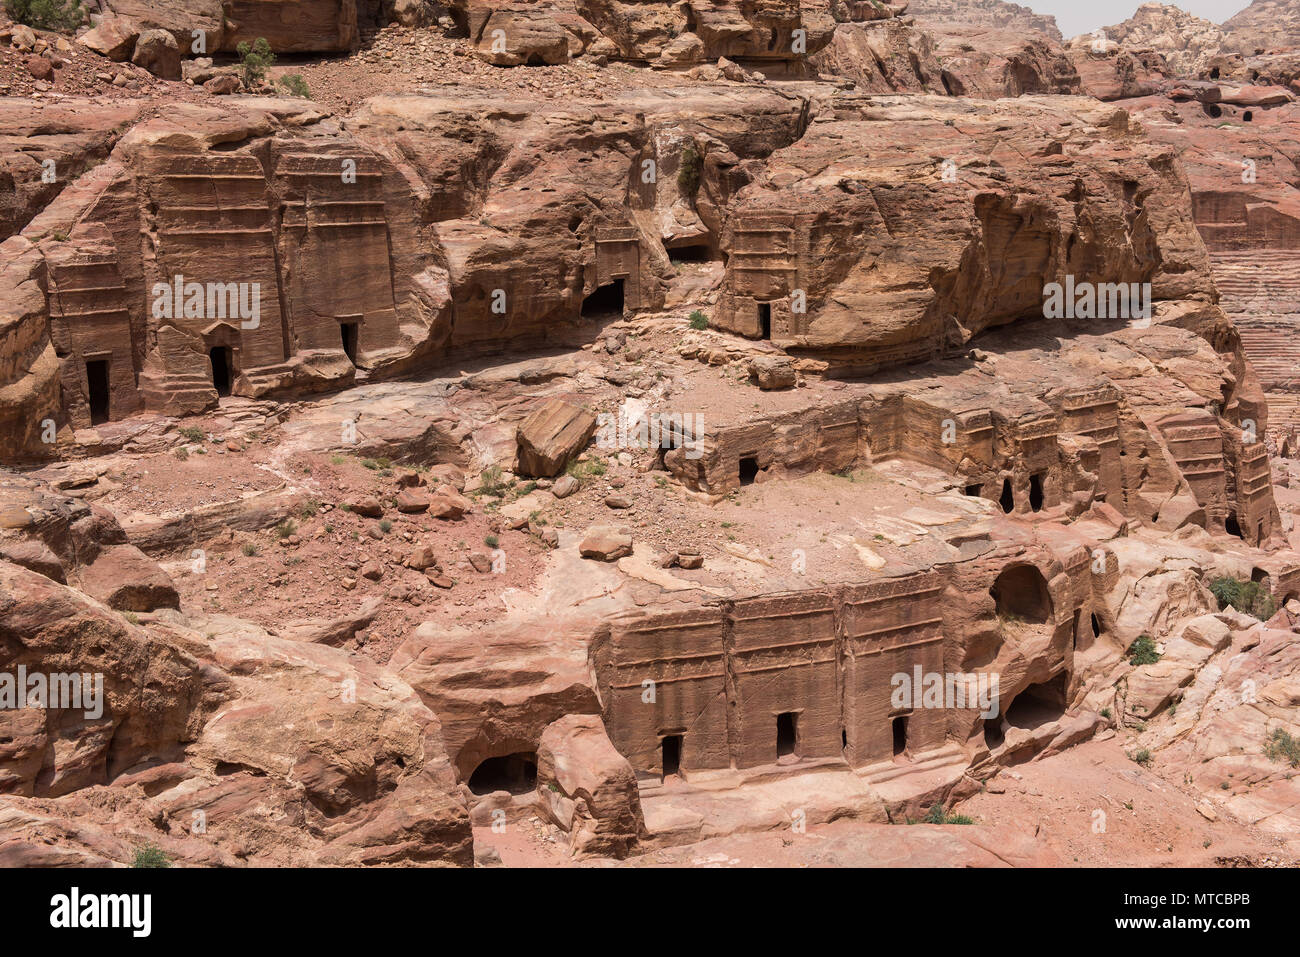 Entrada de una cueva, la tumba real en Petra, Jordania. Metro rocas antiguas talladas, utilizada como lugar de enterramiento Foto de stock